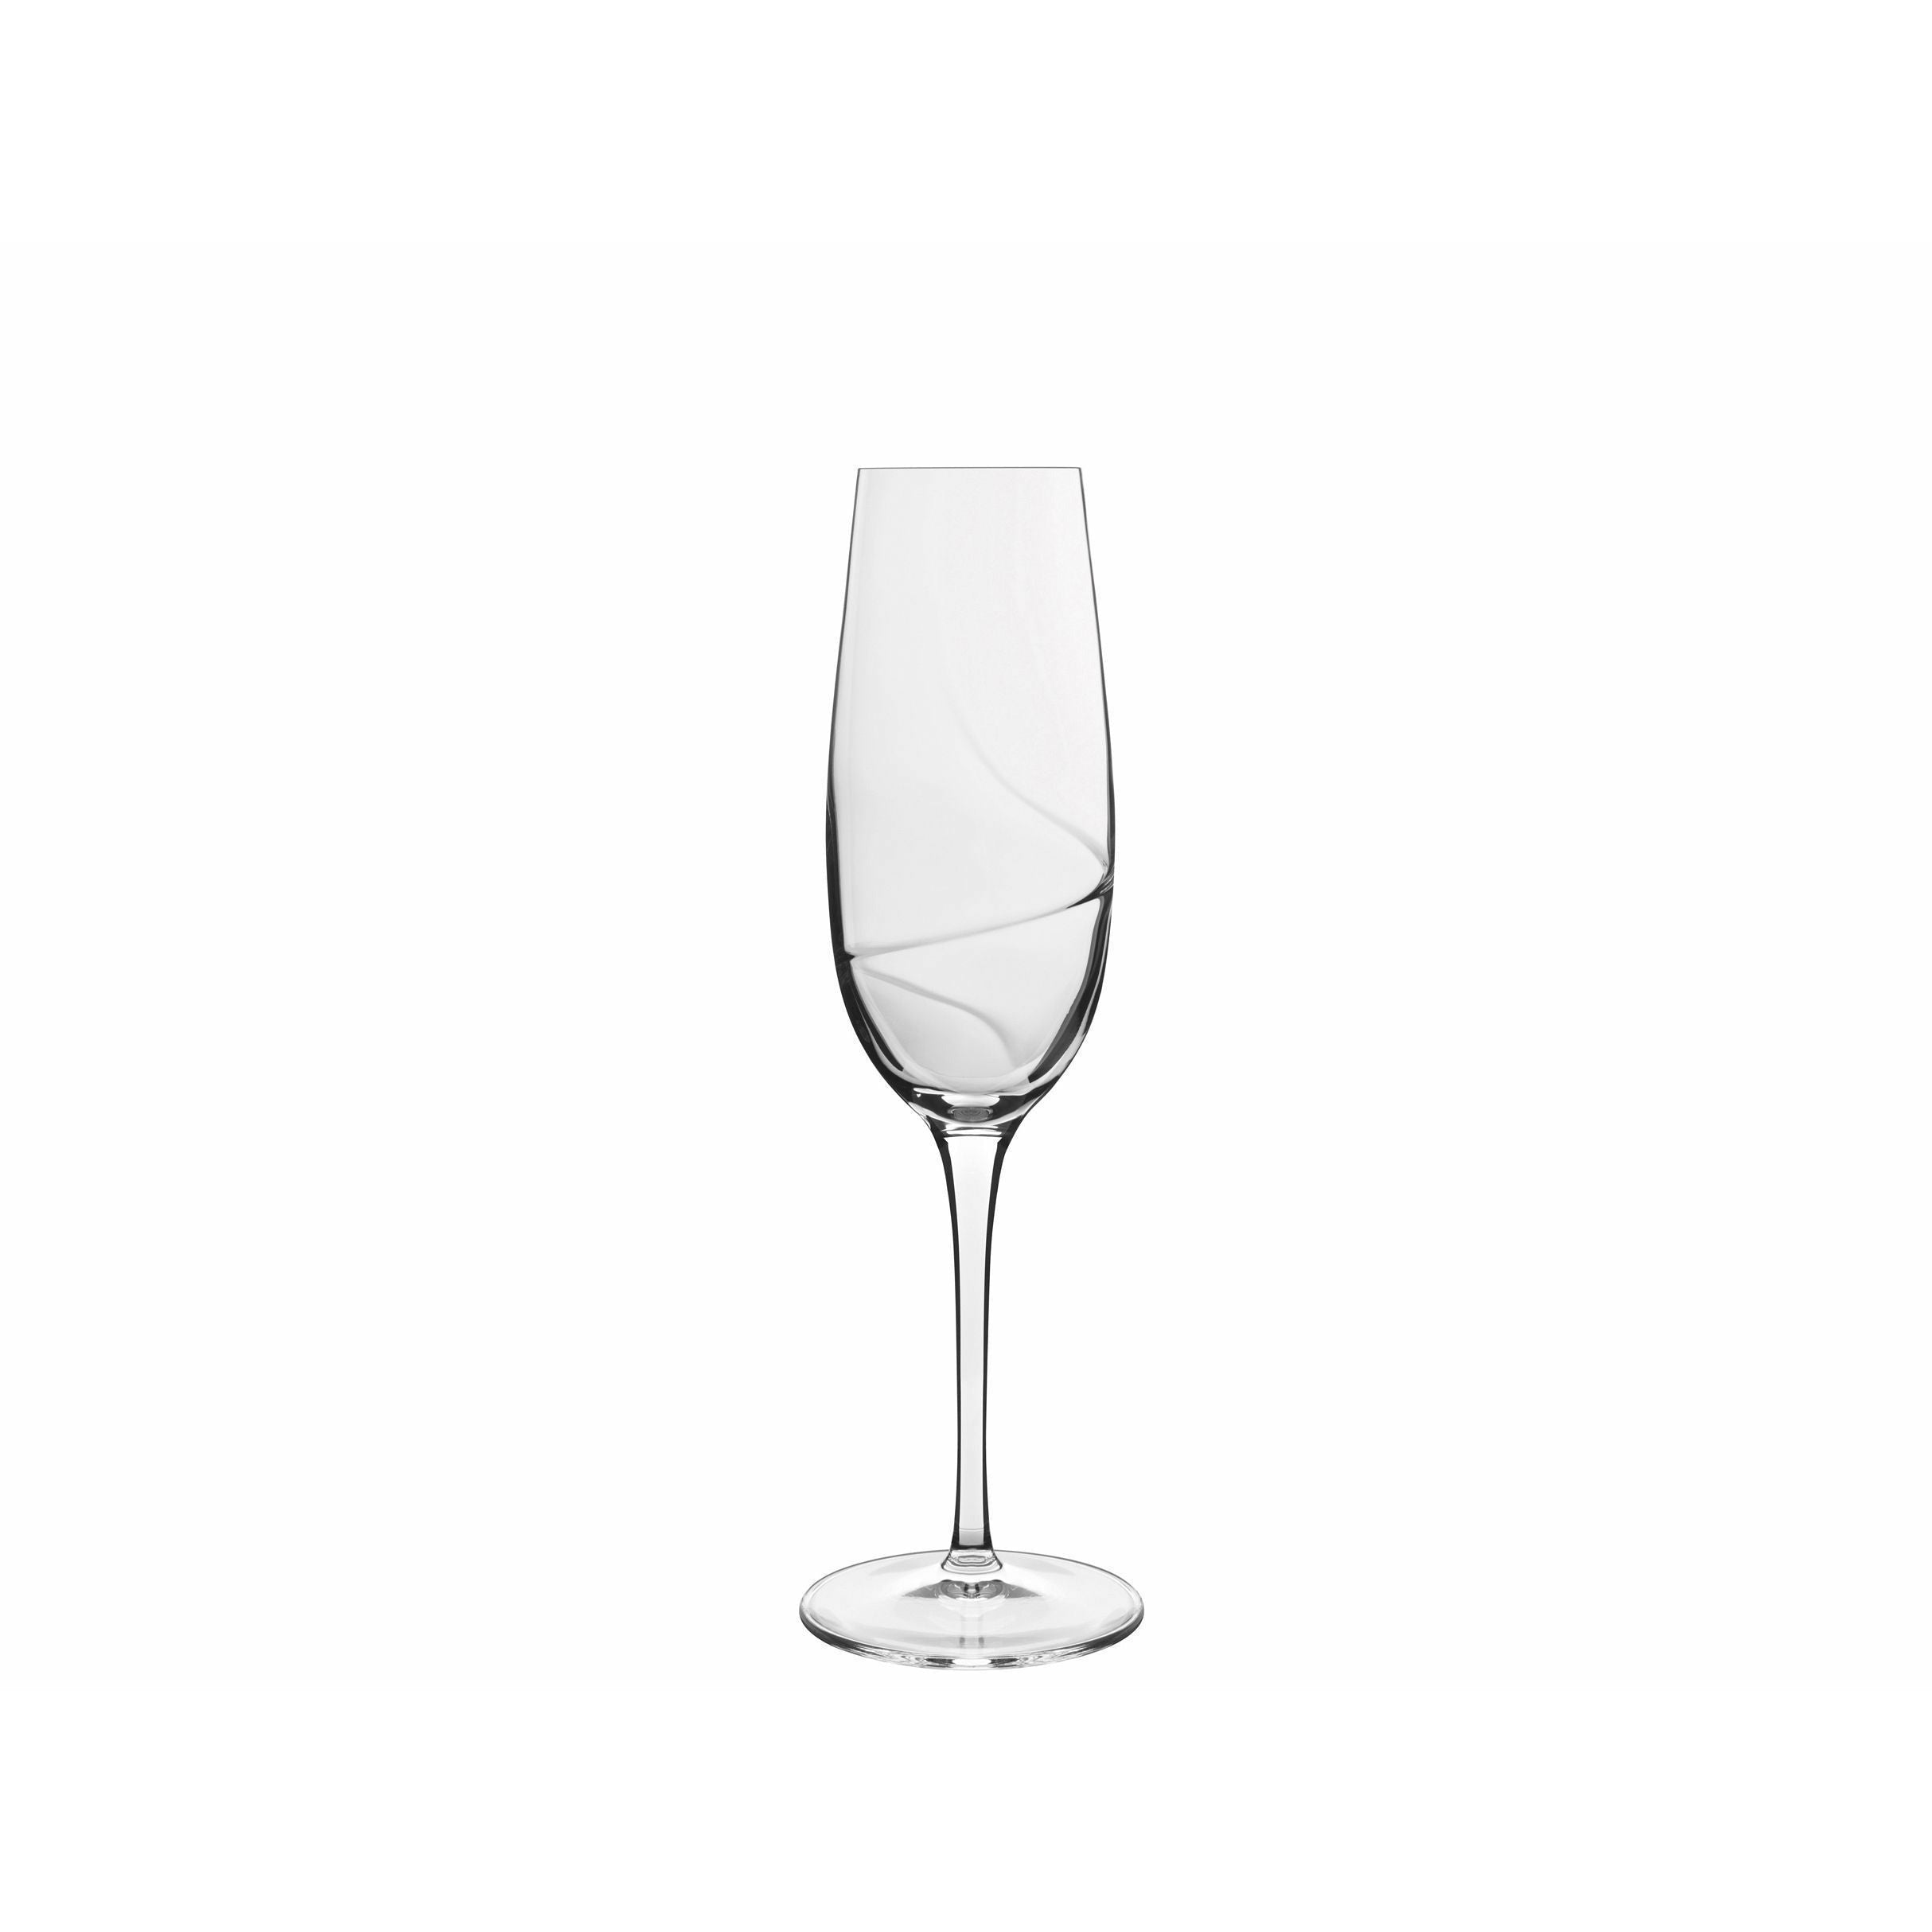 Luigi Bormioli Aero Champagne Glass, set van 6